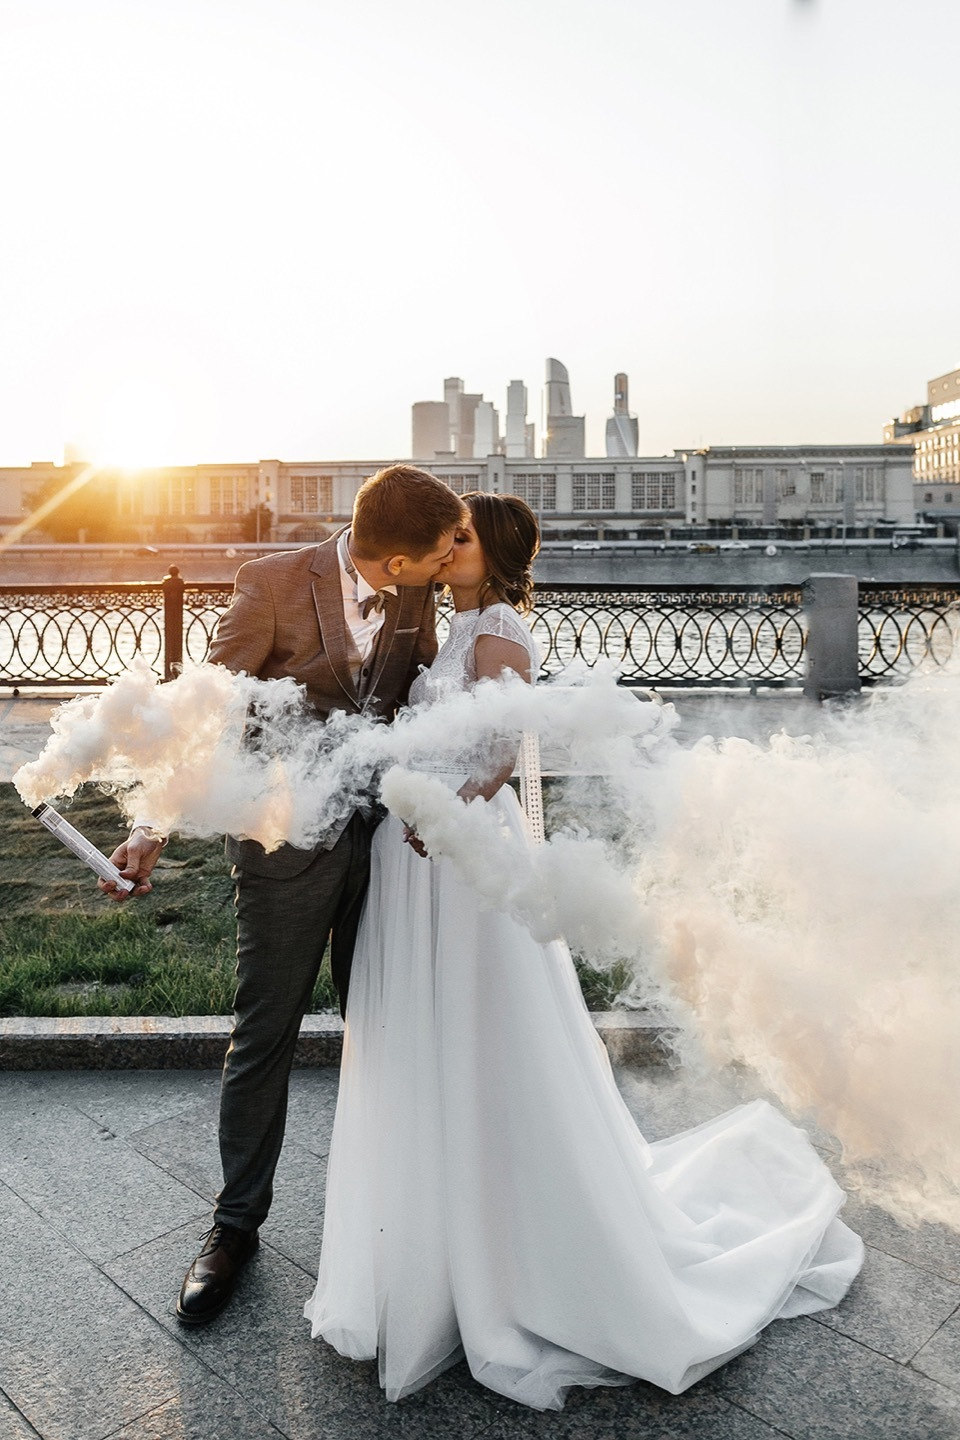 ФОТО ИЗ СТАТЬИ: Элегантная свадьба в урбан-стилистике